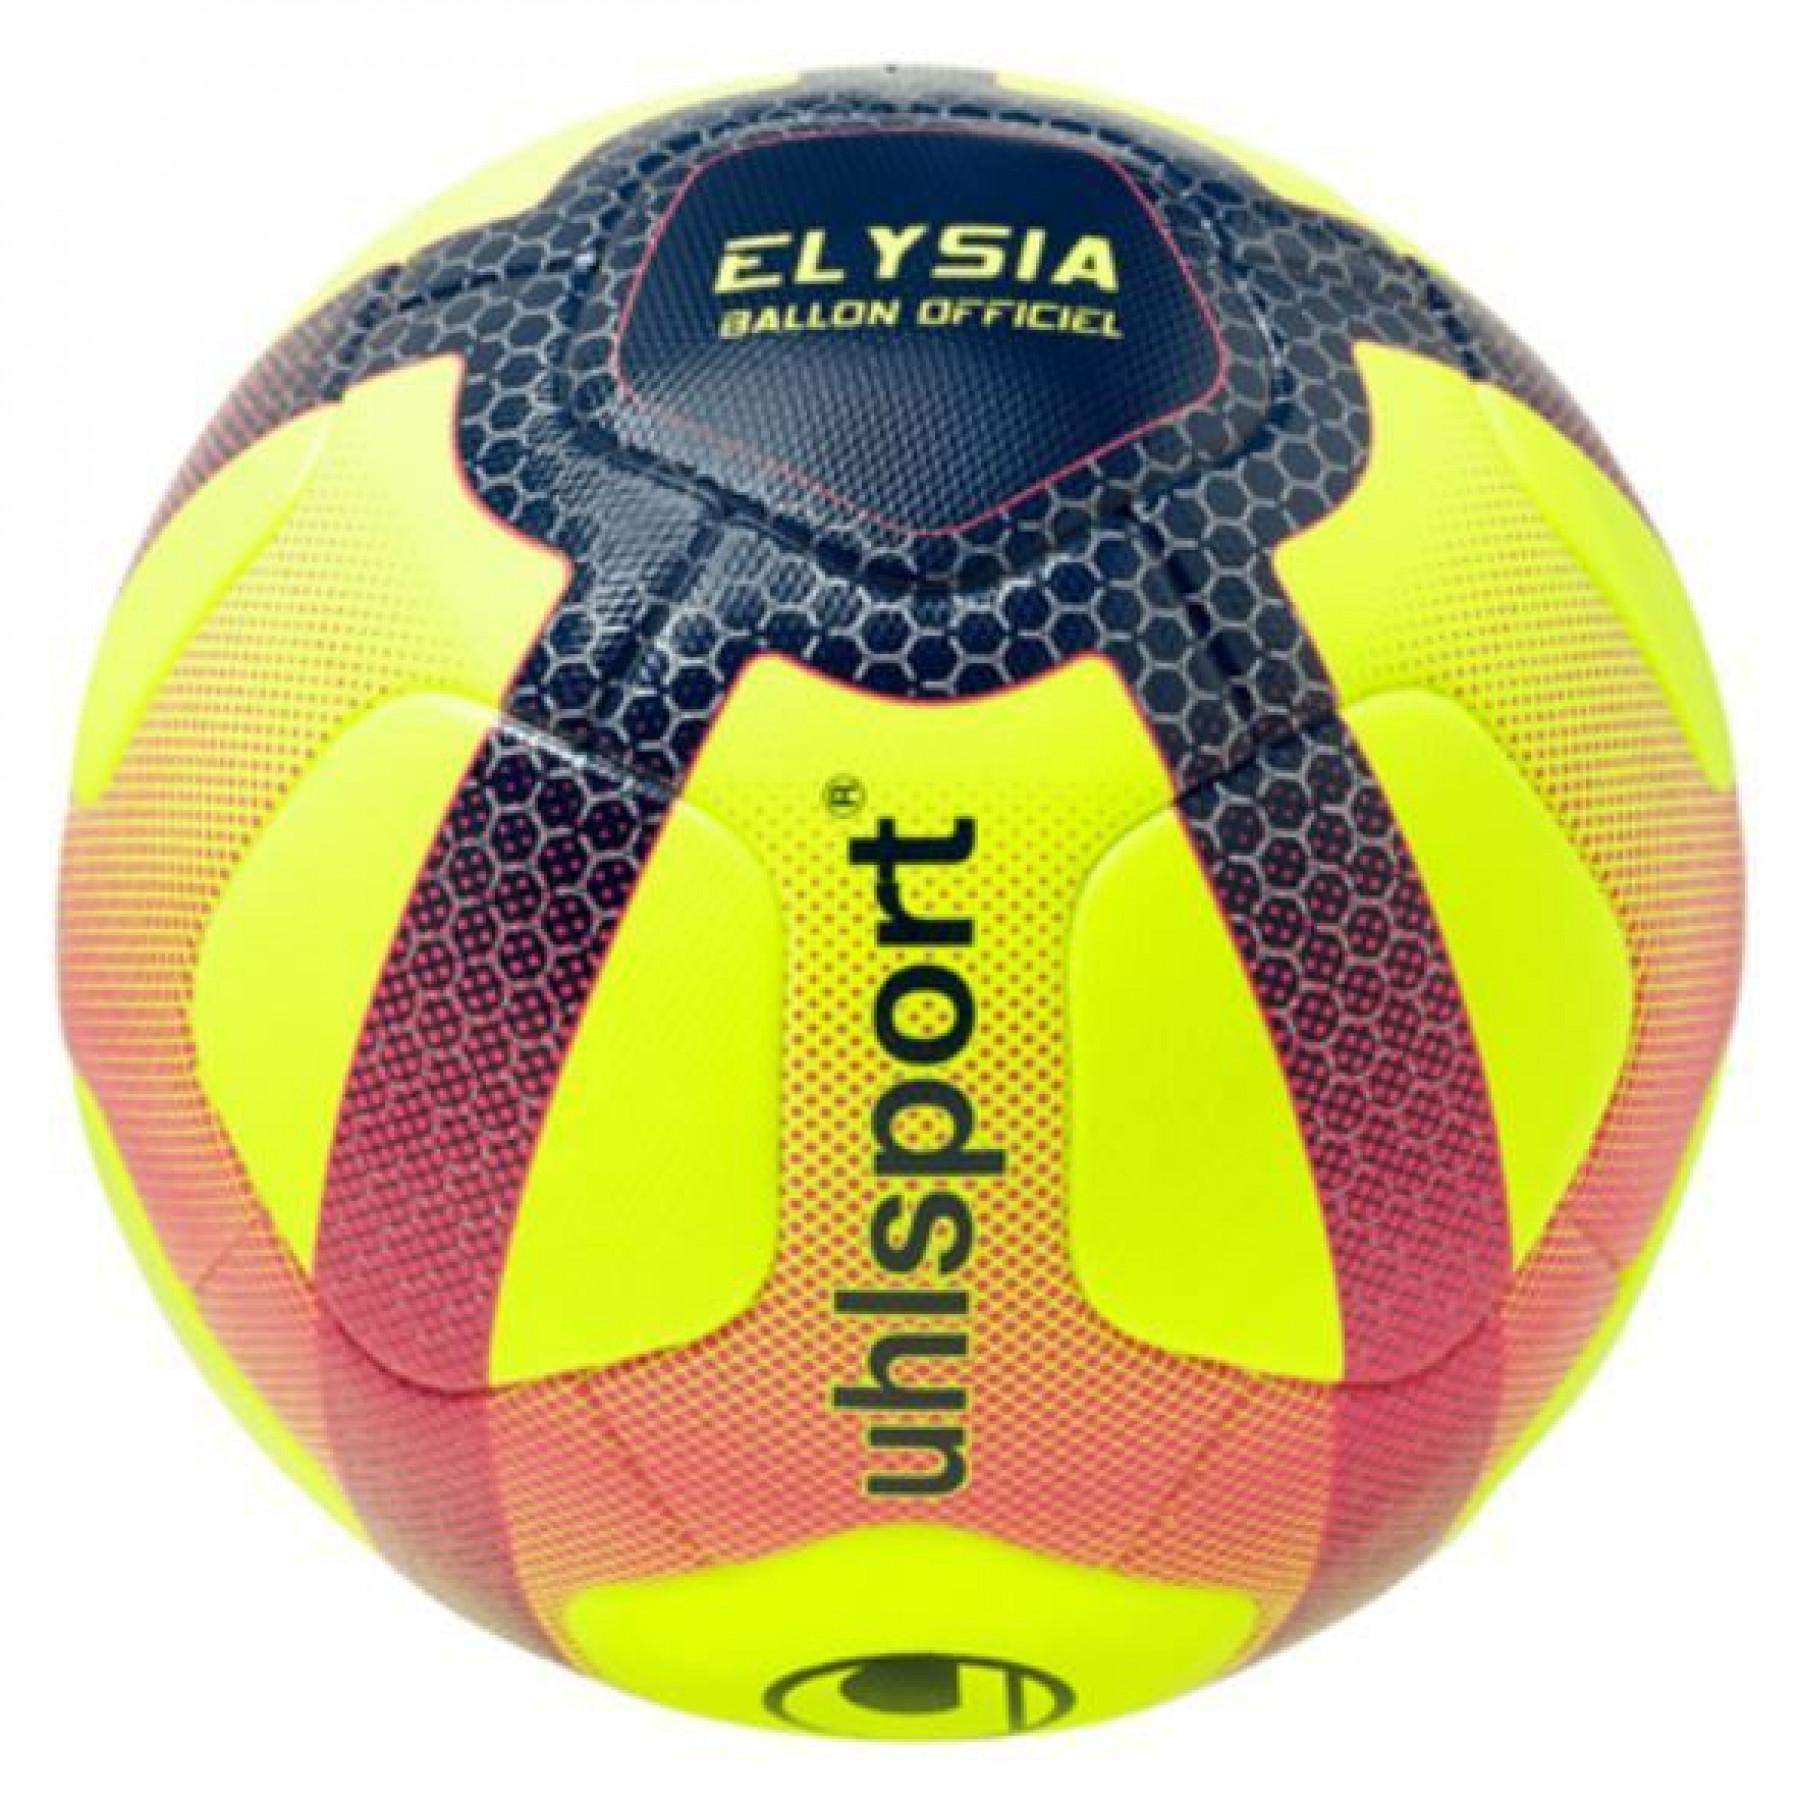 Balon Uhlsport officiel Ligue 1 Conforama